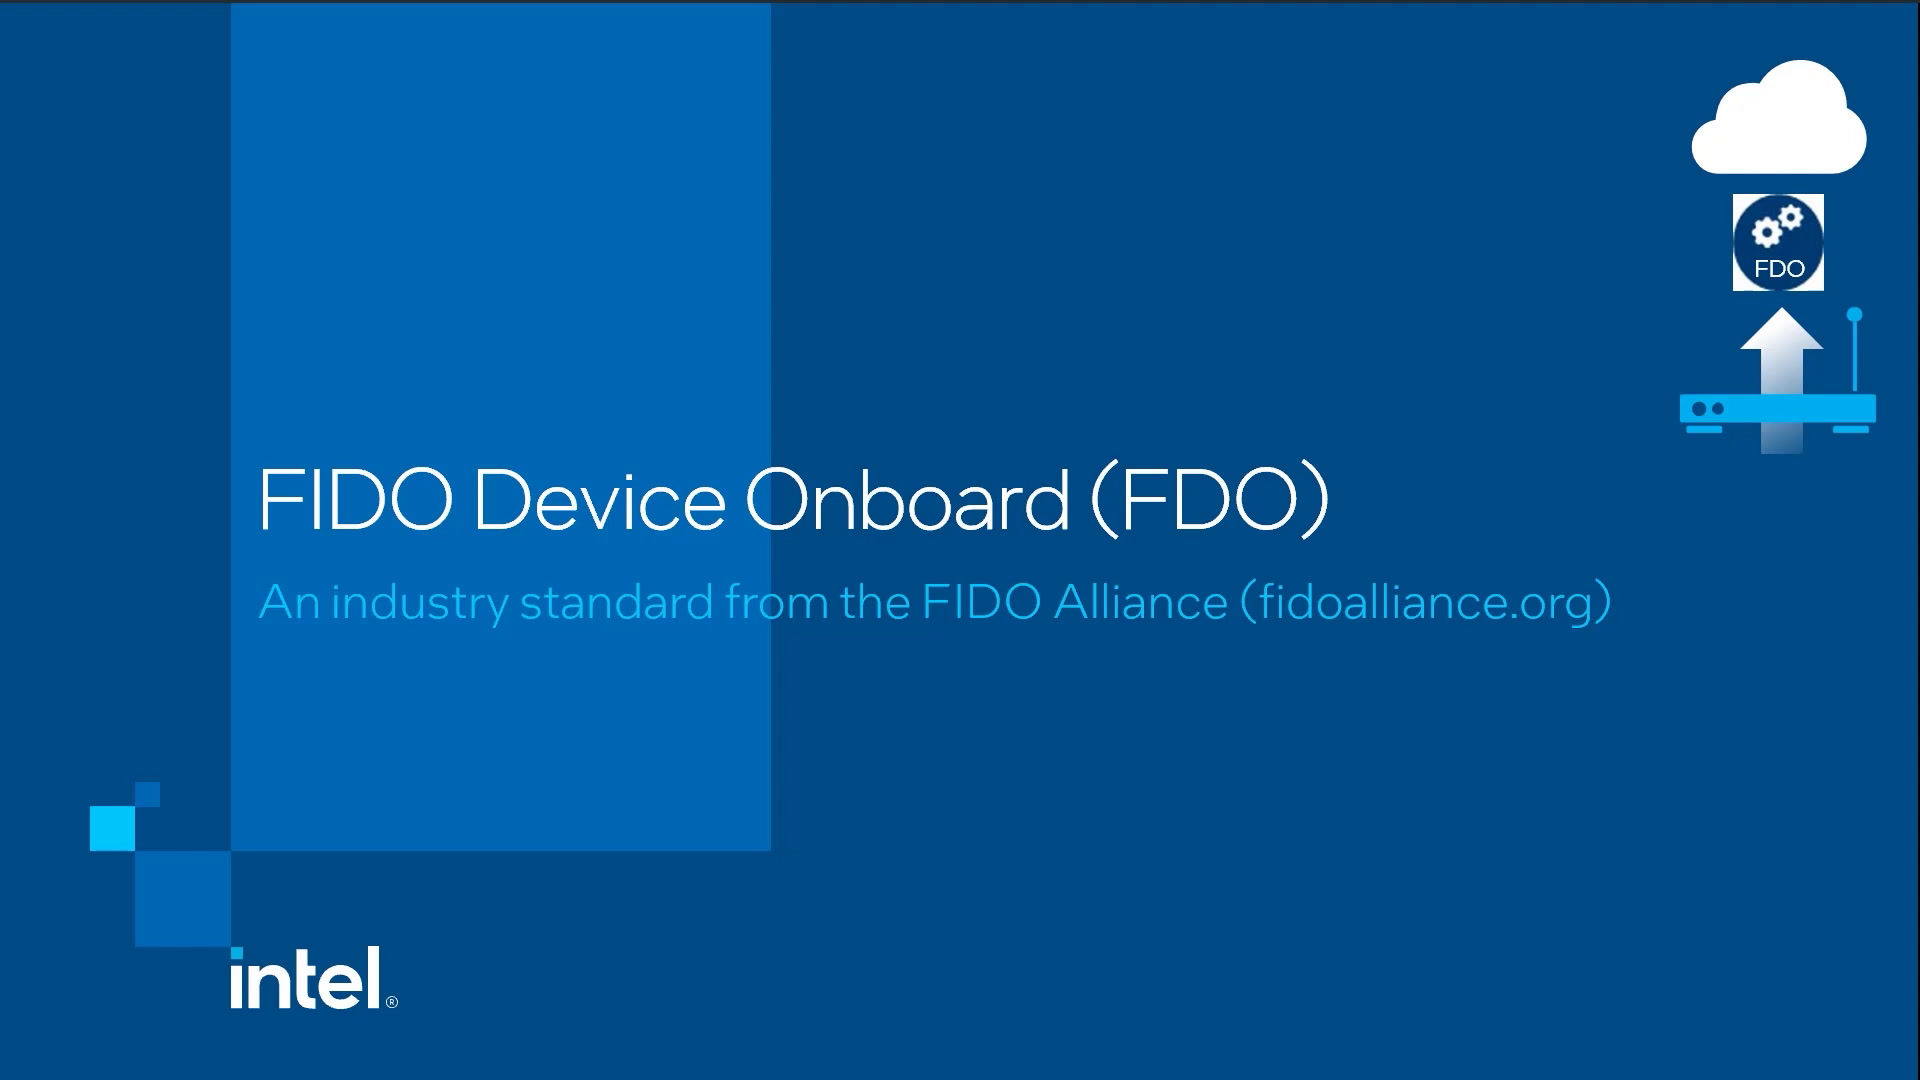 Chapter 1: FIDO Device Onboard (FDO)